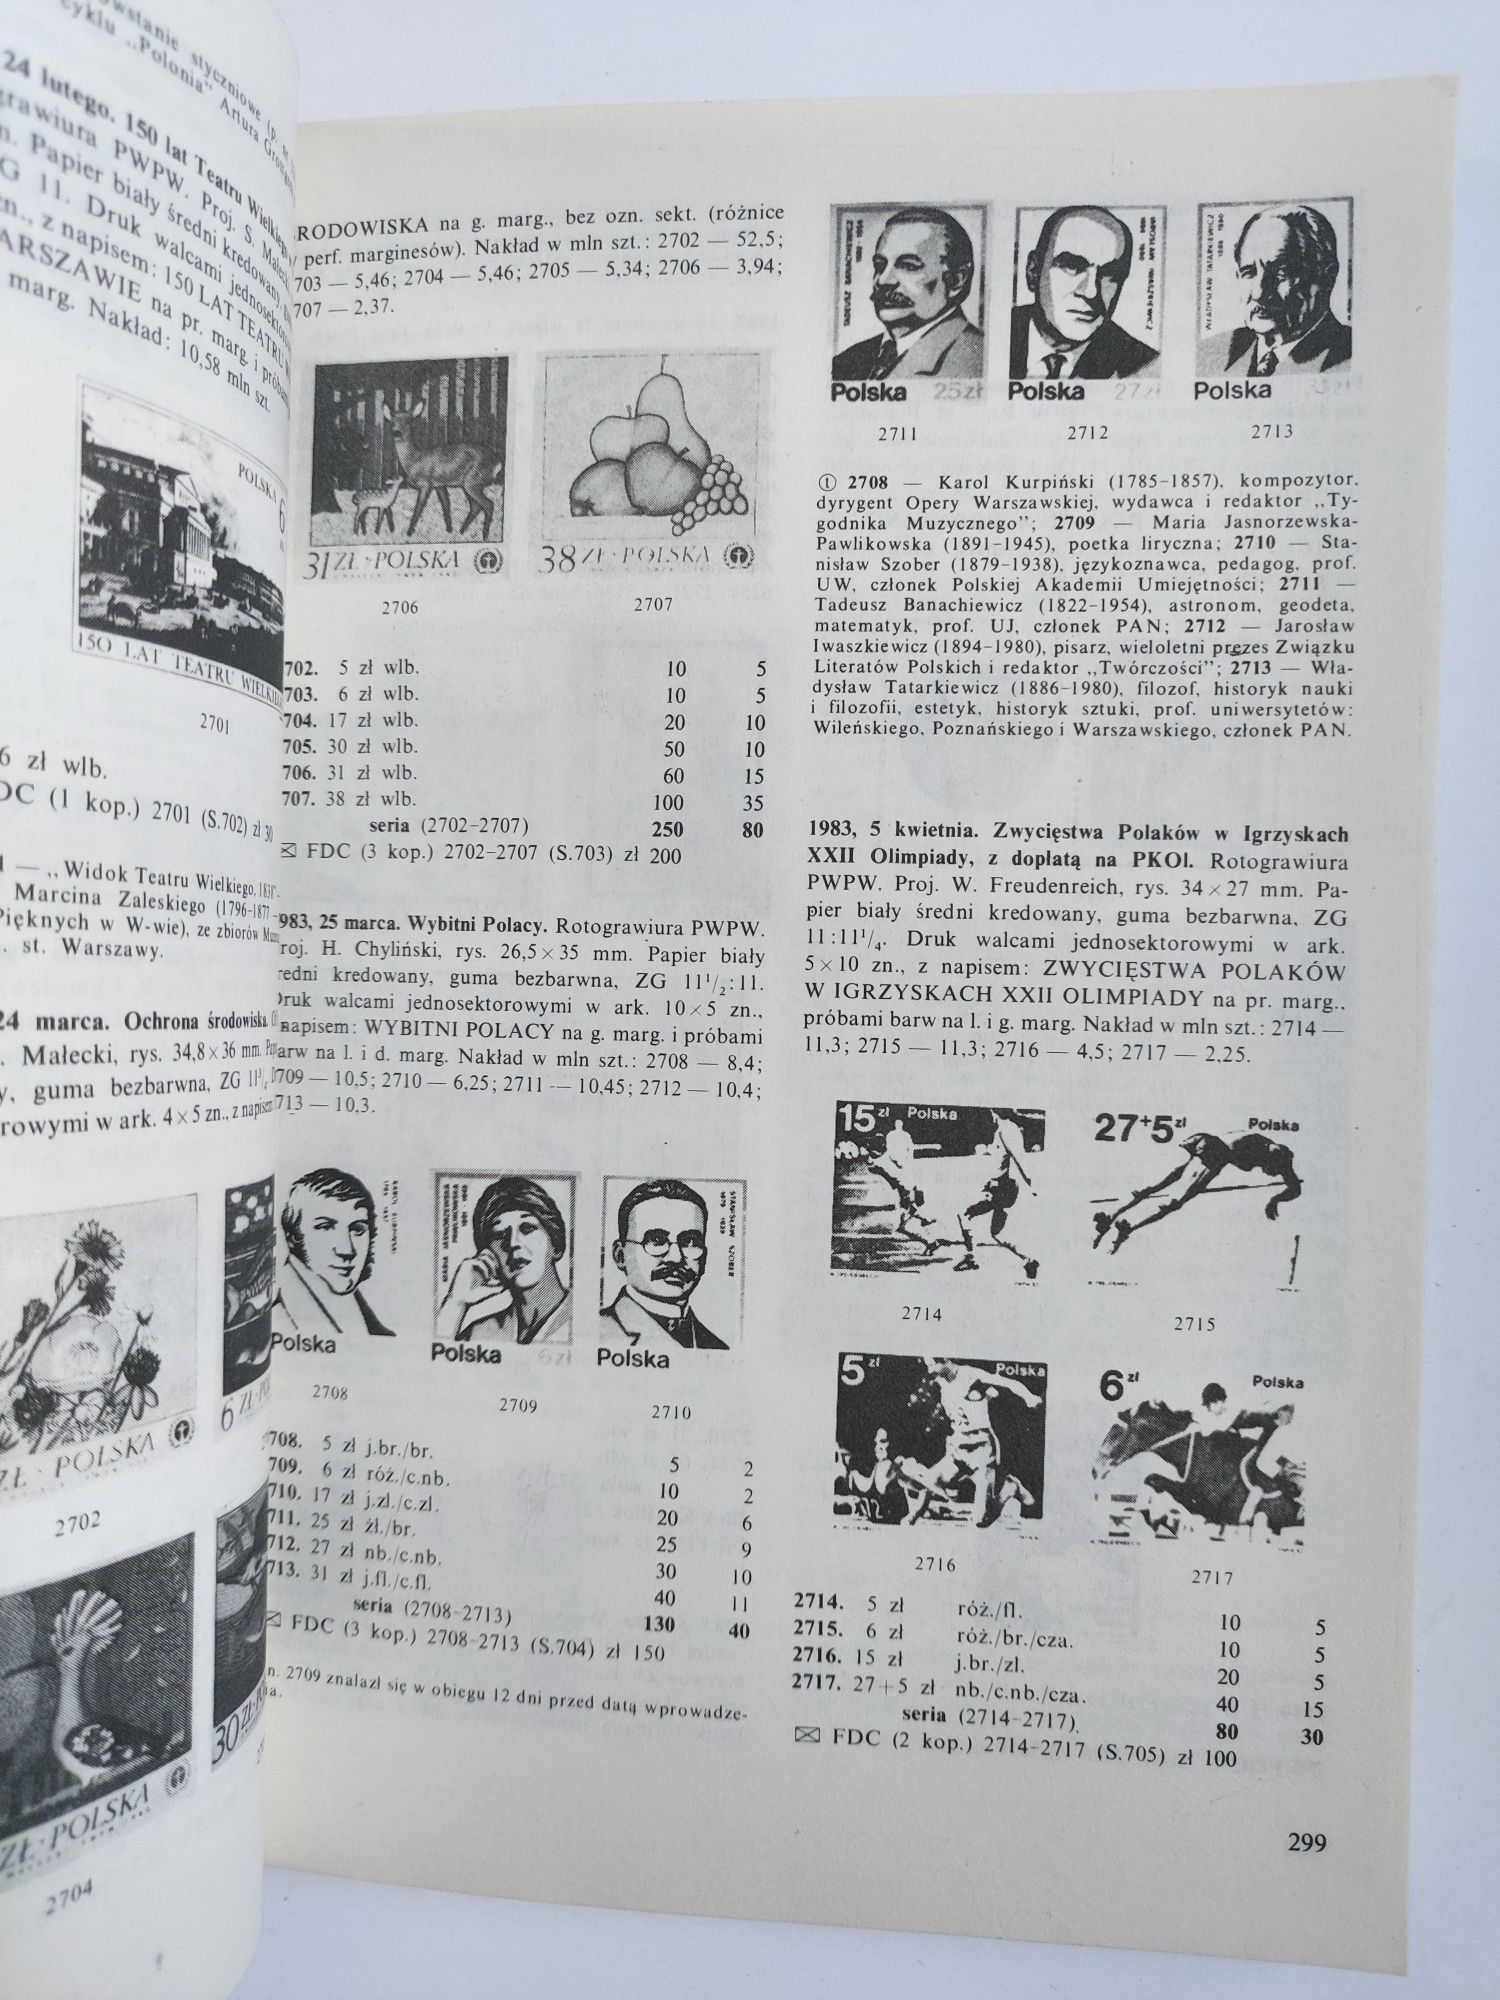 Katalog specjalizowany znaków pocztowych ziem polskich 1990